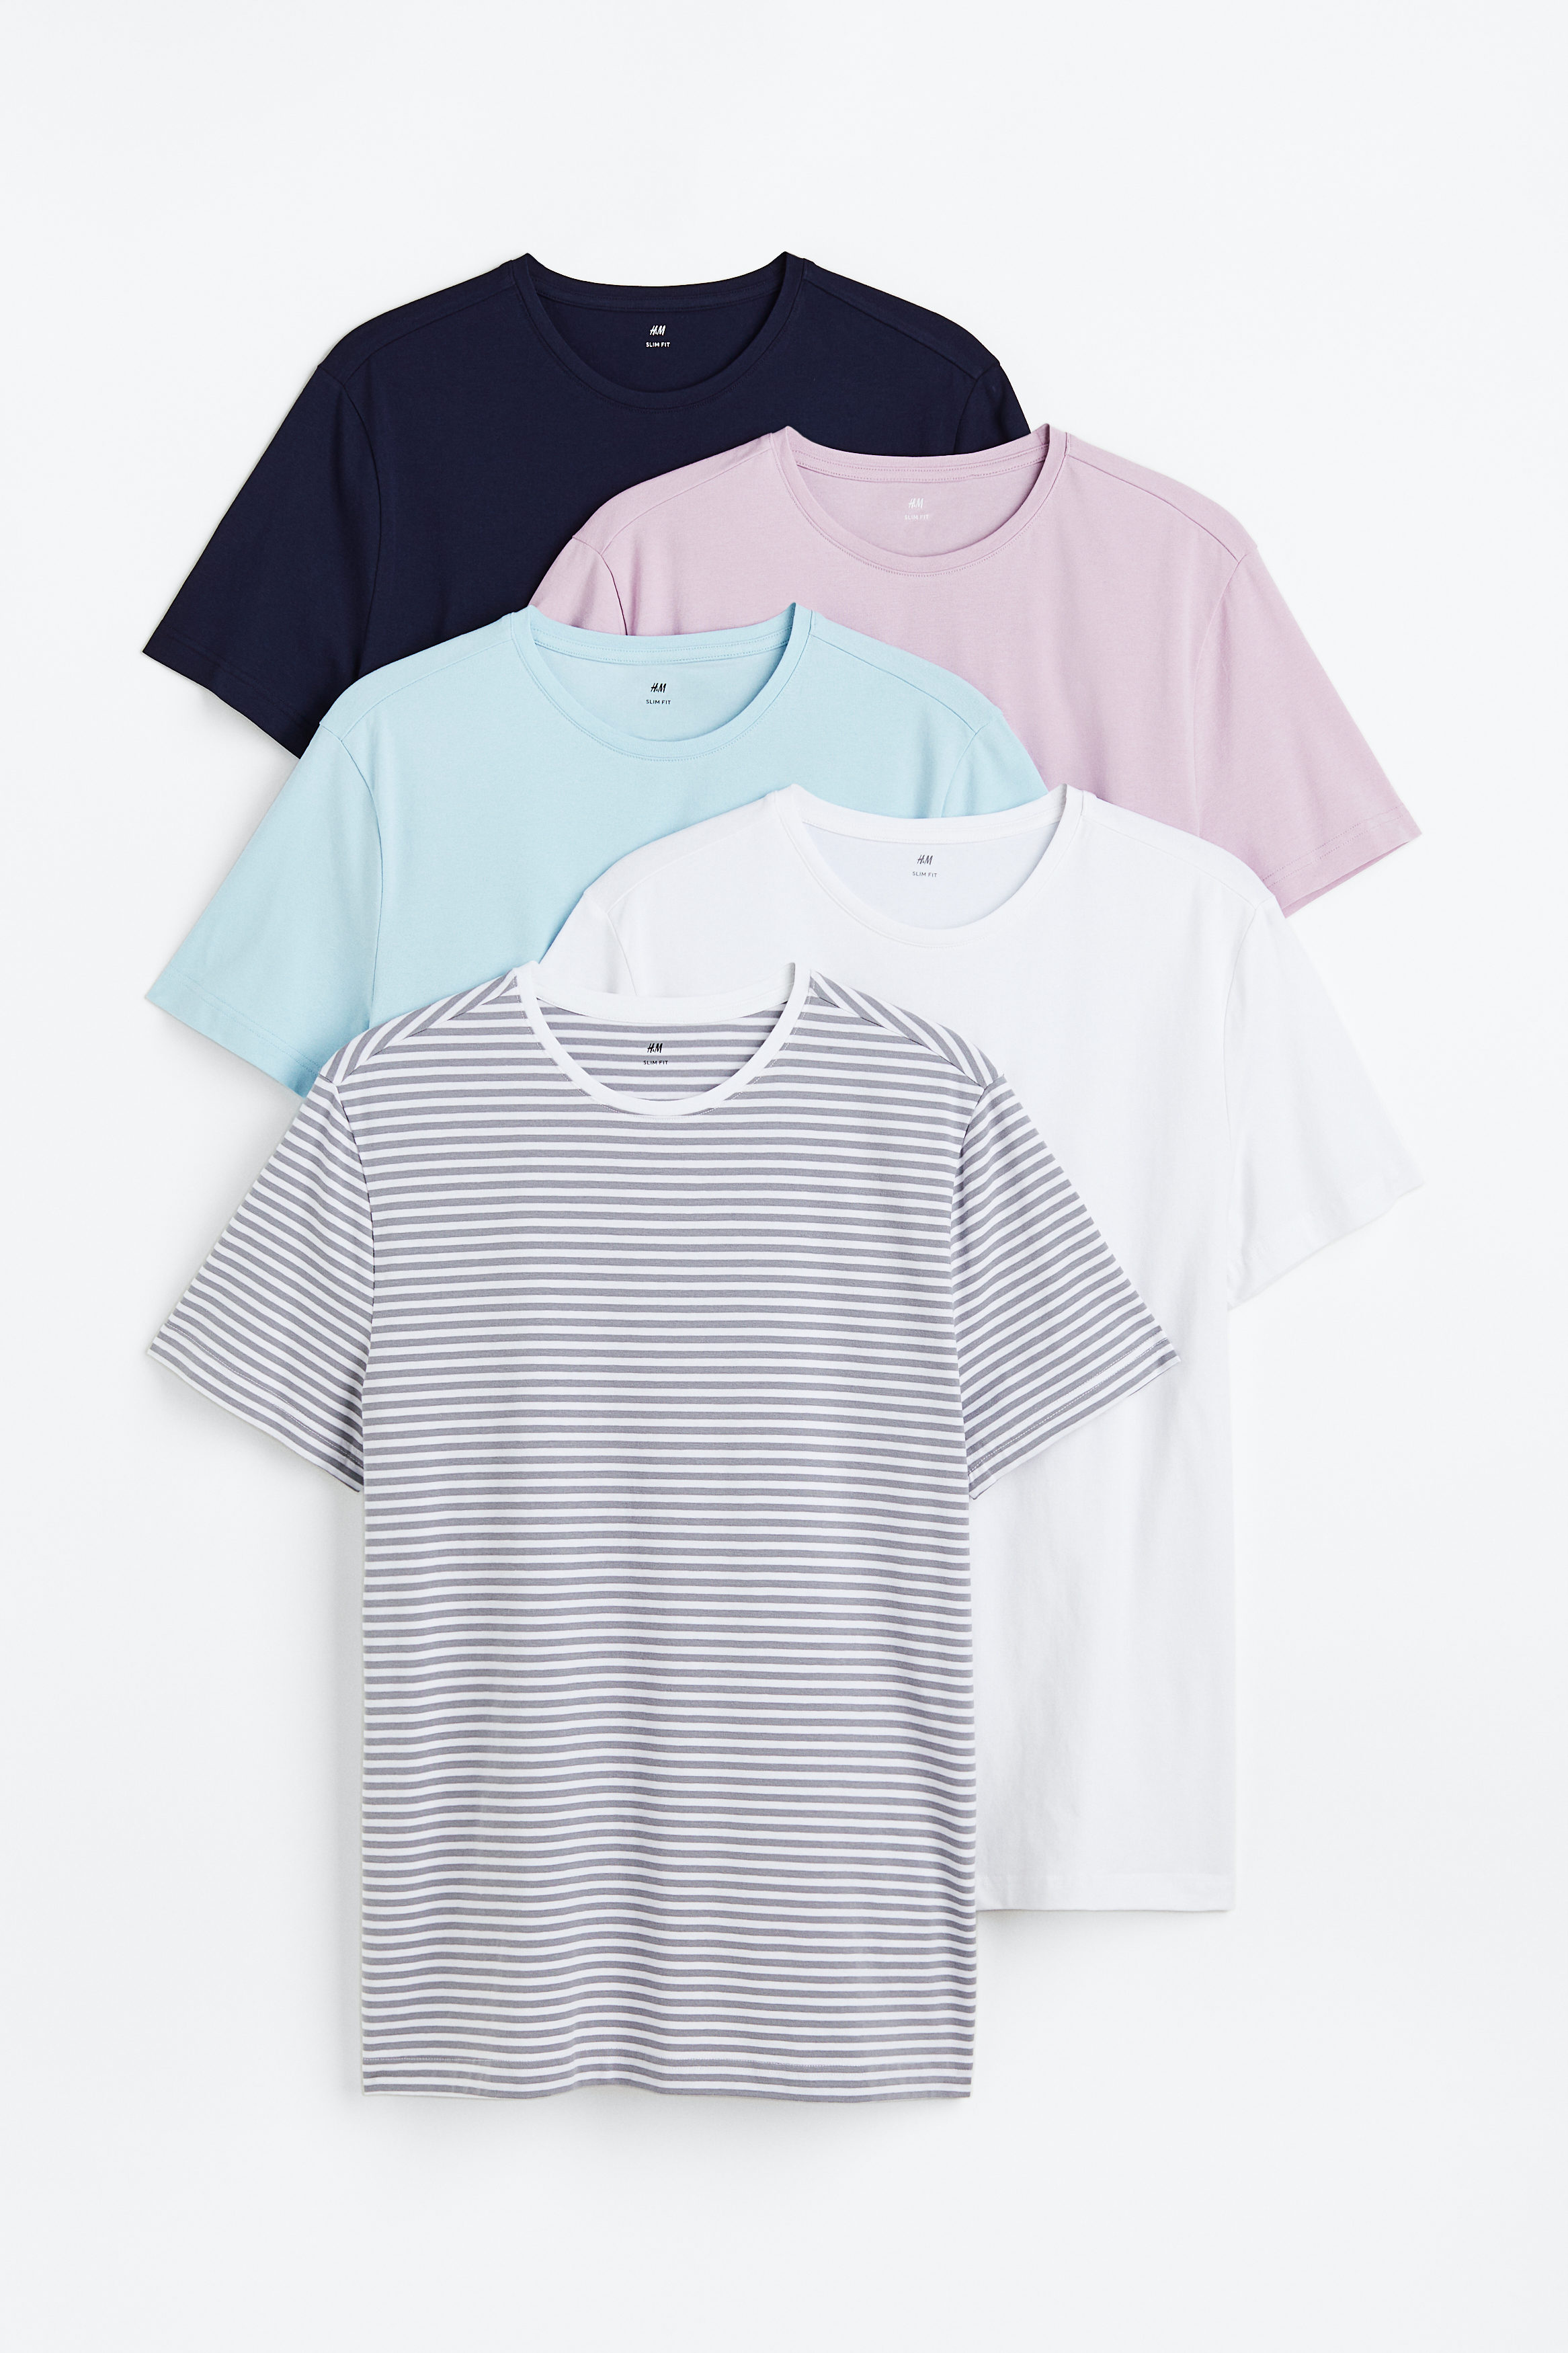 Billede af H&M 5-pak T-shirt Slim Fit Lyseblå/lyslilla, T-shirts. Farve: Light blue/light purple I størrelse S